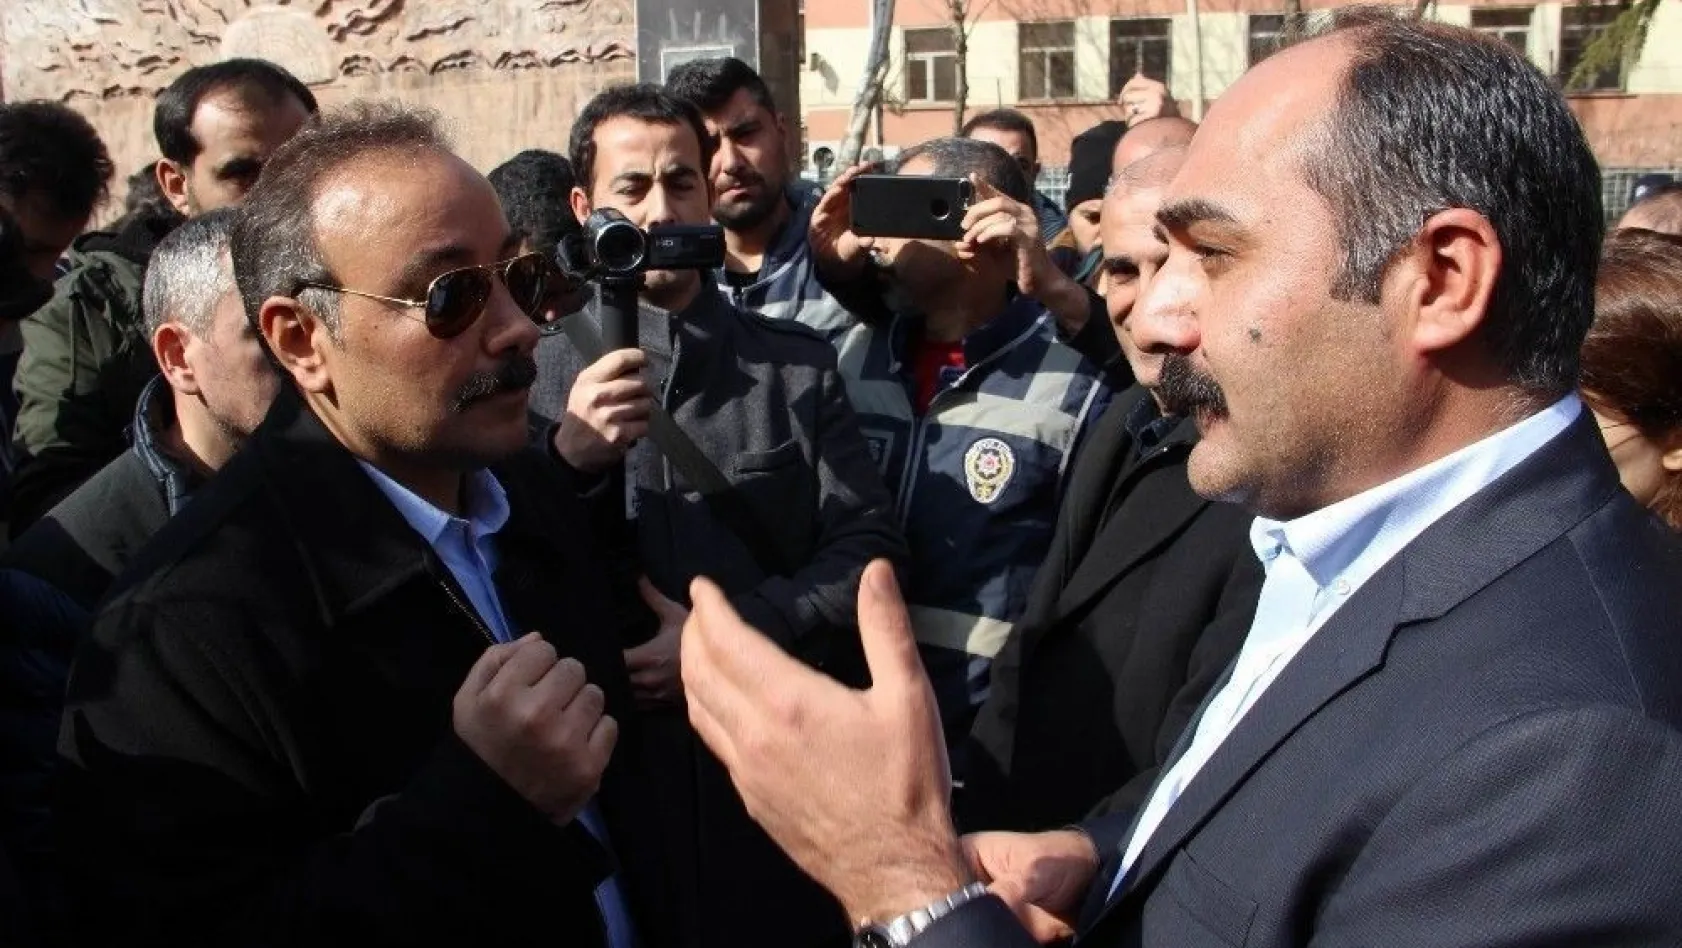 Polis müdüründen HDP'li vekile: 'Burası muz cumhuriyeti değil'
